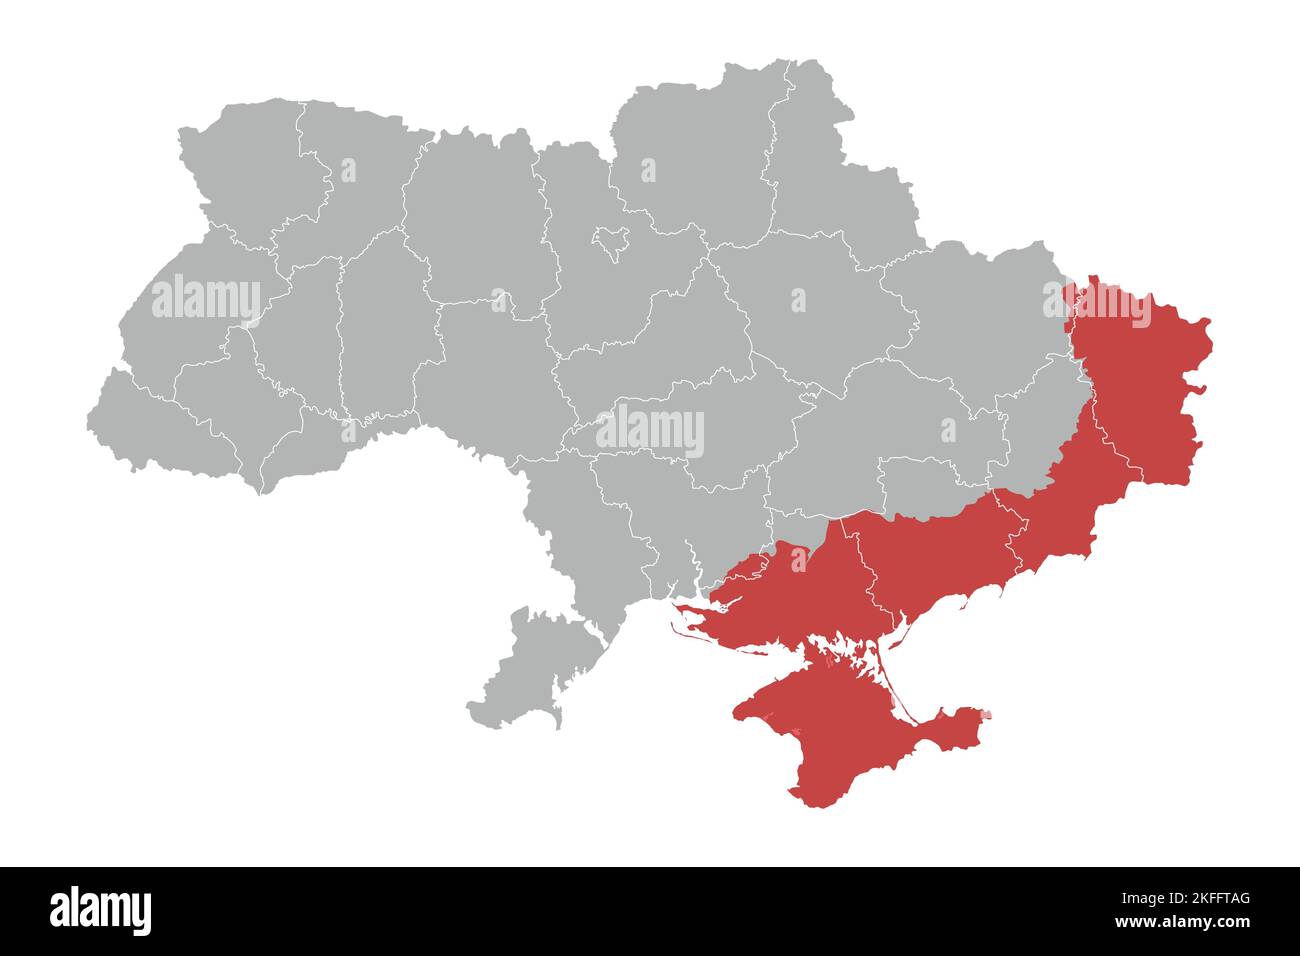 Politische Landkarte der Ukraine mit Grenzen der Regionen Stock Vektor